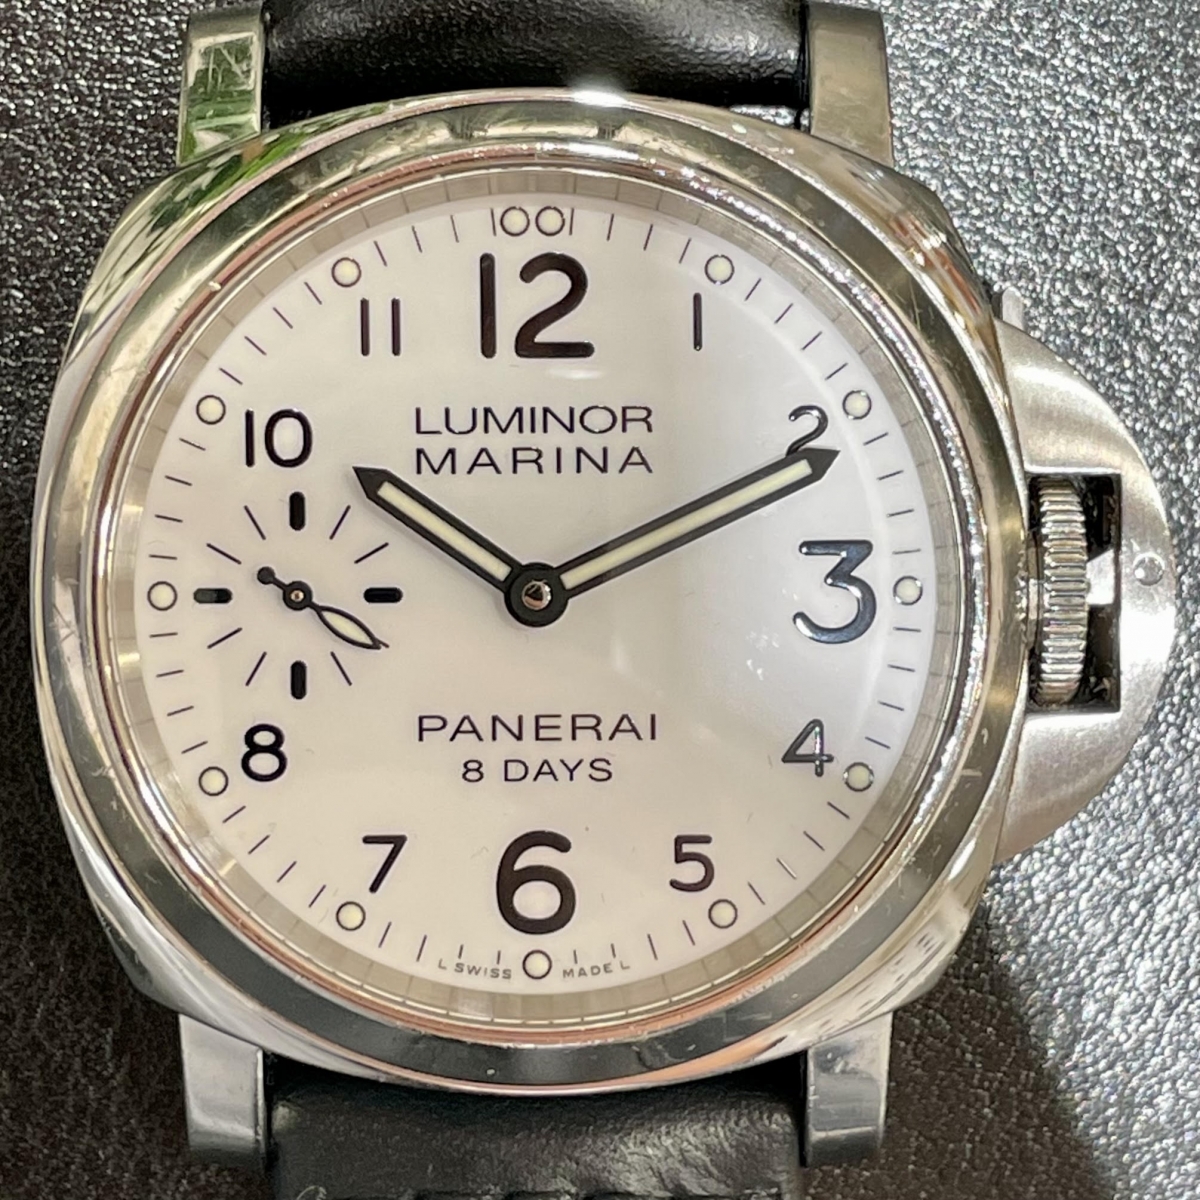 パネライのPAM00563 ルミノールマリーナ 8デイズ アッチャイオ 自動巻き 時計の買取実績です。